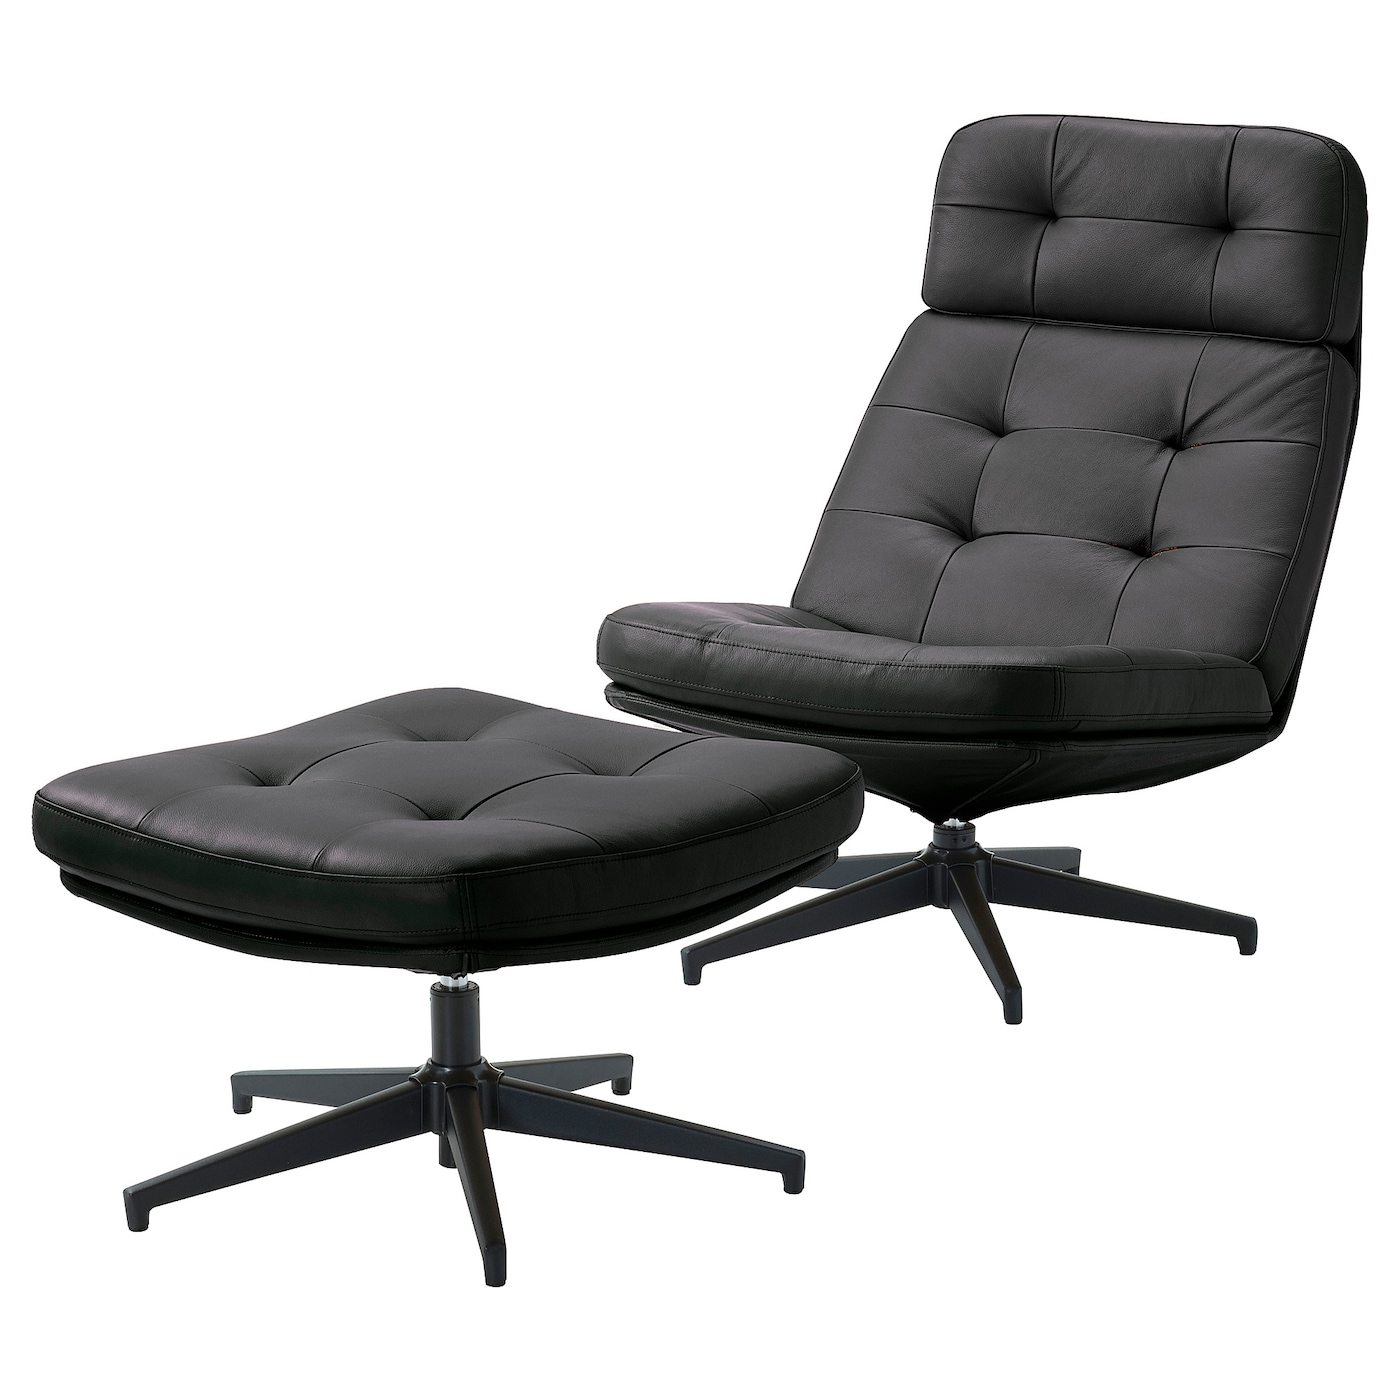 ХАВБЕРГ Кресло и подставка для ног, Гранн/Бомстад черный HAVBERG IKEA эргономичное колесико офисное кресло с поддержкой спинки удобное вращающееся игровое кресло подставка для ног офисная мебель